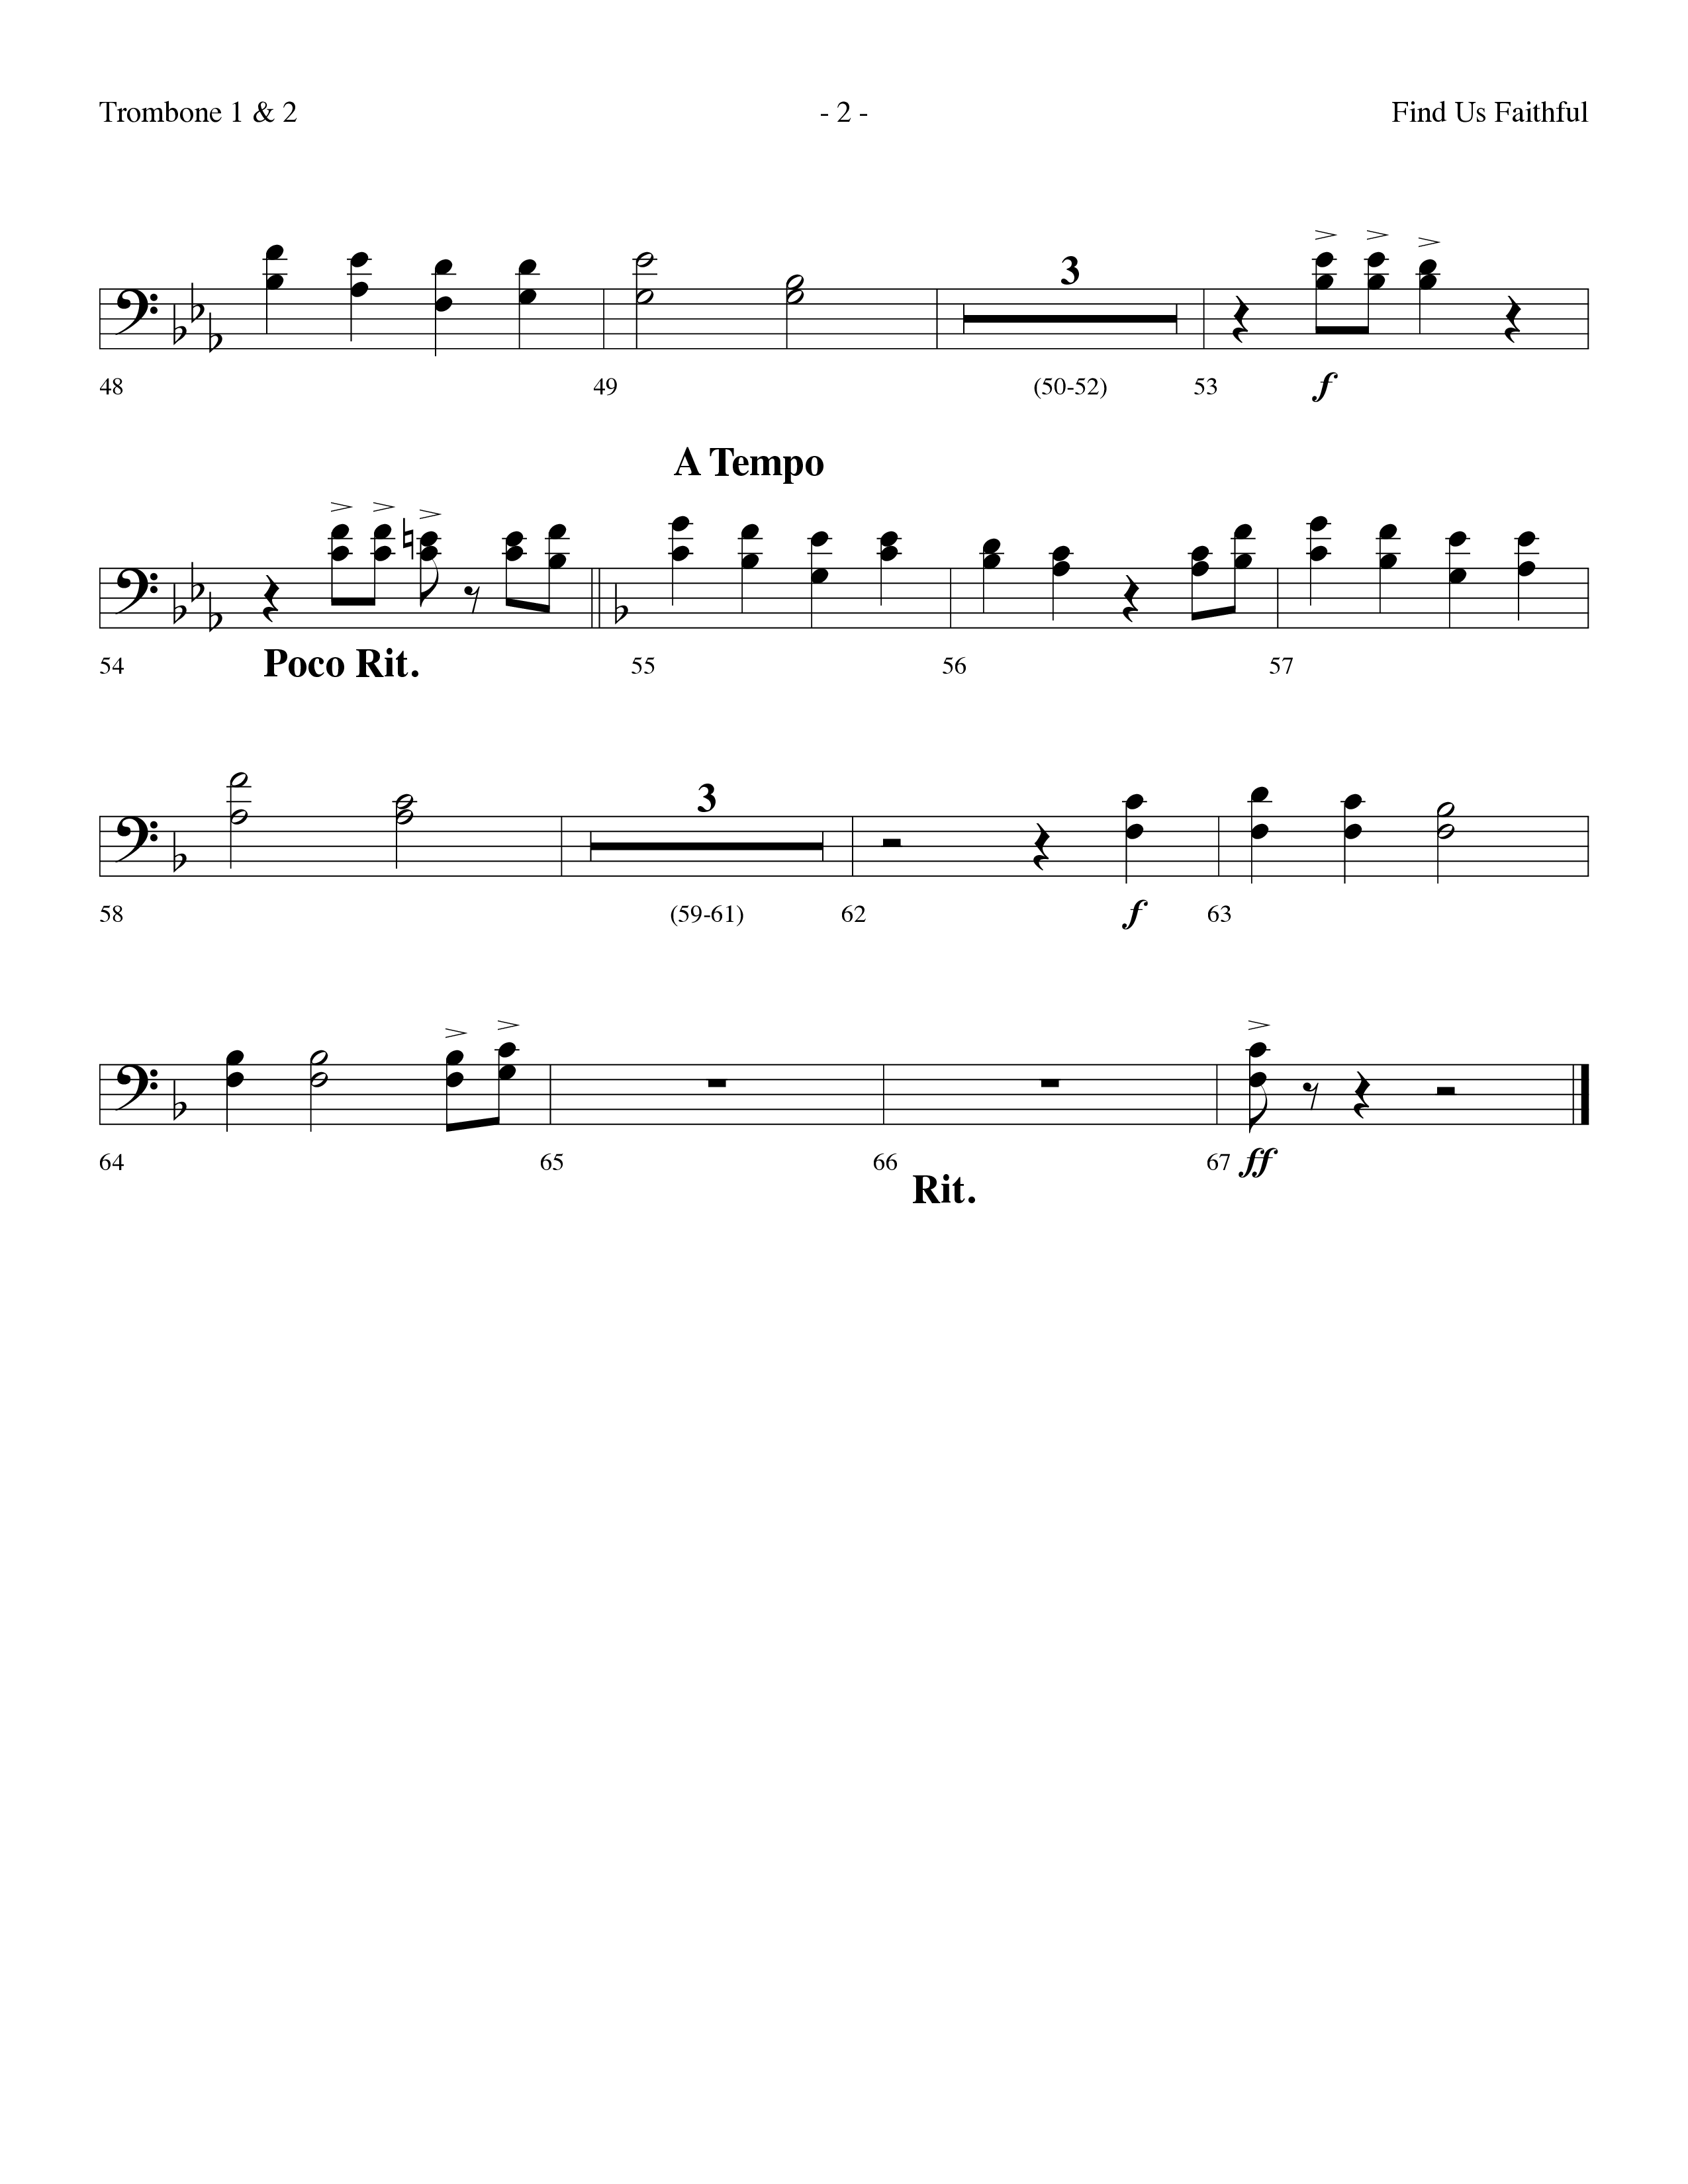 Find Us Faithful (Choral Anthem SATB) Trombone 1/2 (Lifeway Choral / Arr. Dennis Allen)